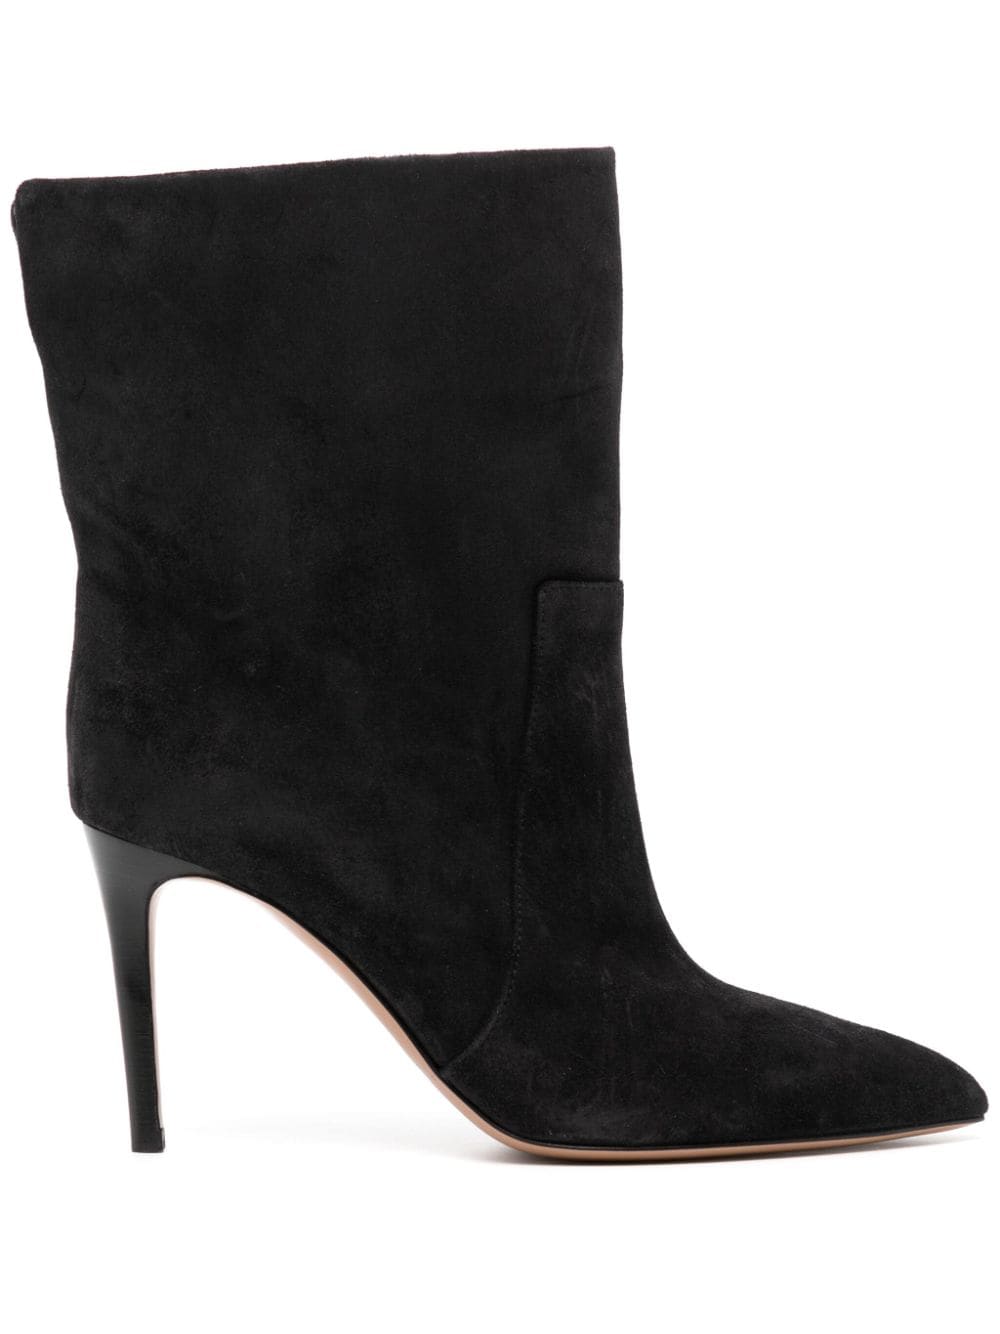 Paris Texas Stilleto 85mm leather ankle boots - Black von Paris Texas